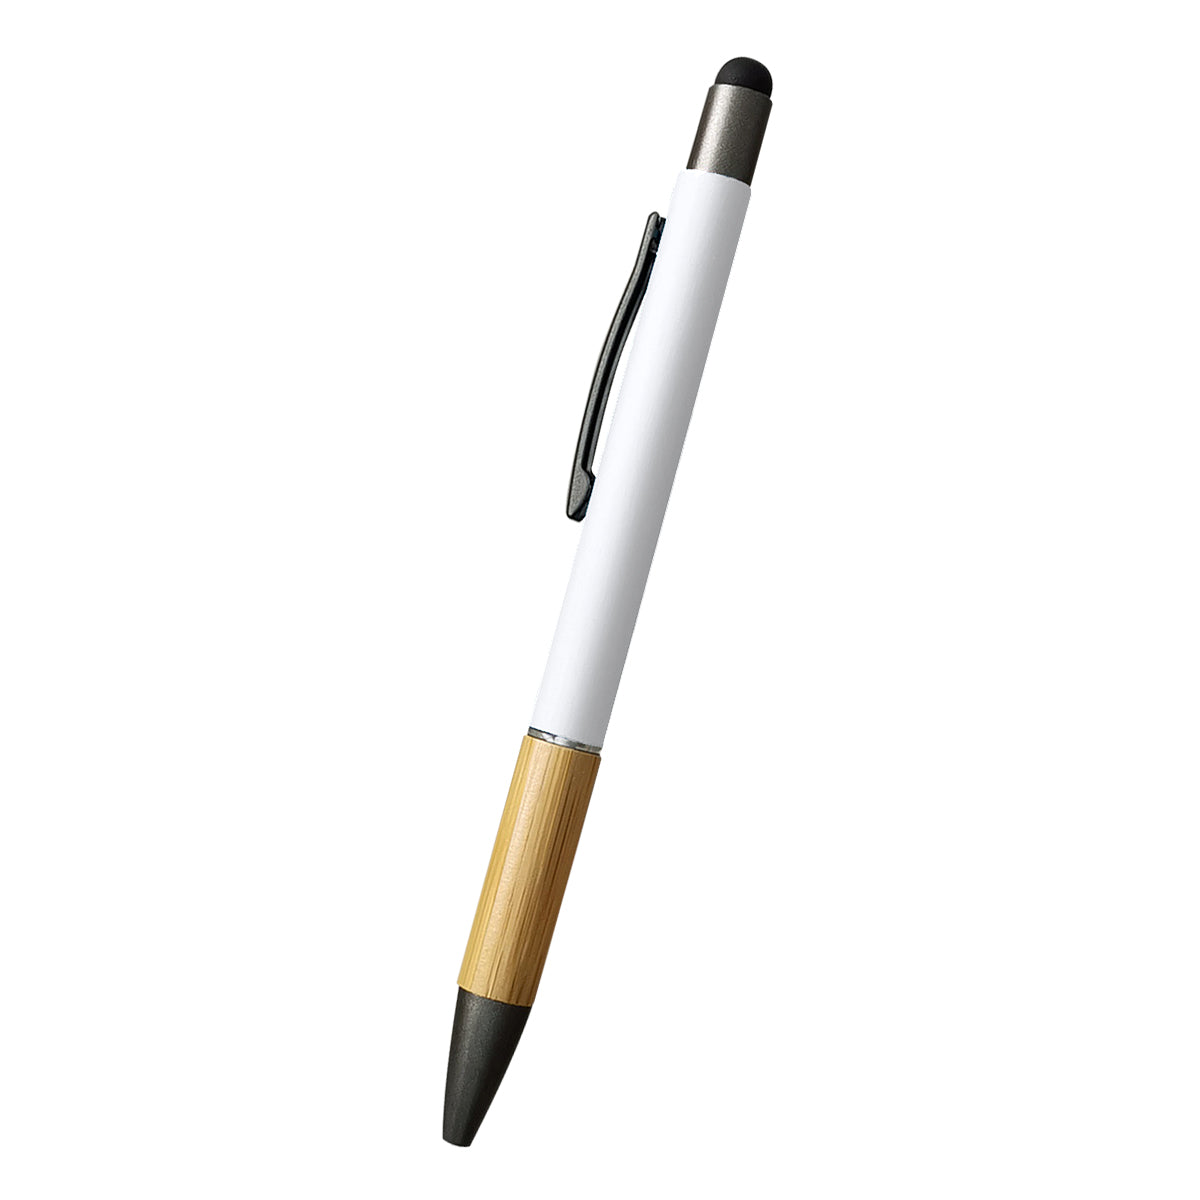 Customizable Aidan bamboo stylus pen in white.